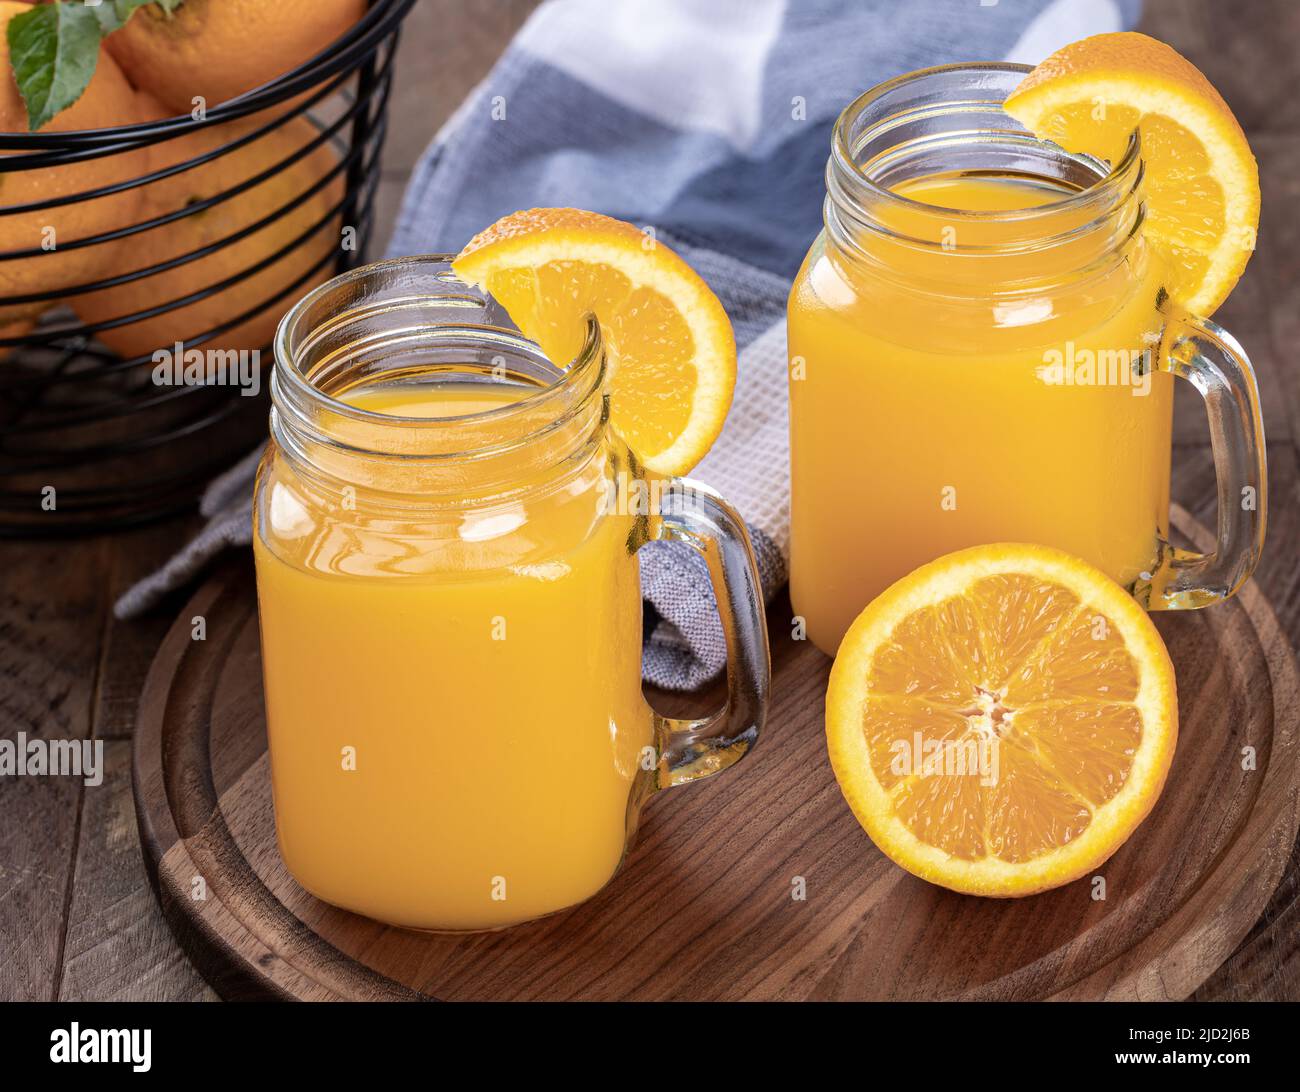 Dos vasos de zumo de naranja con siceses de naranja en un plato de madera con una cesta de naranjas de fondo Foto de stock